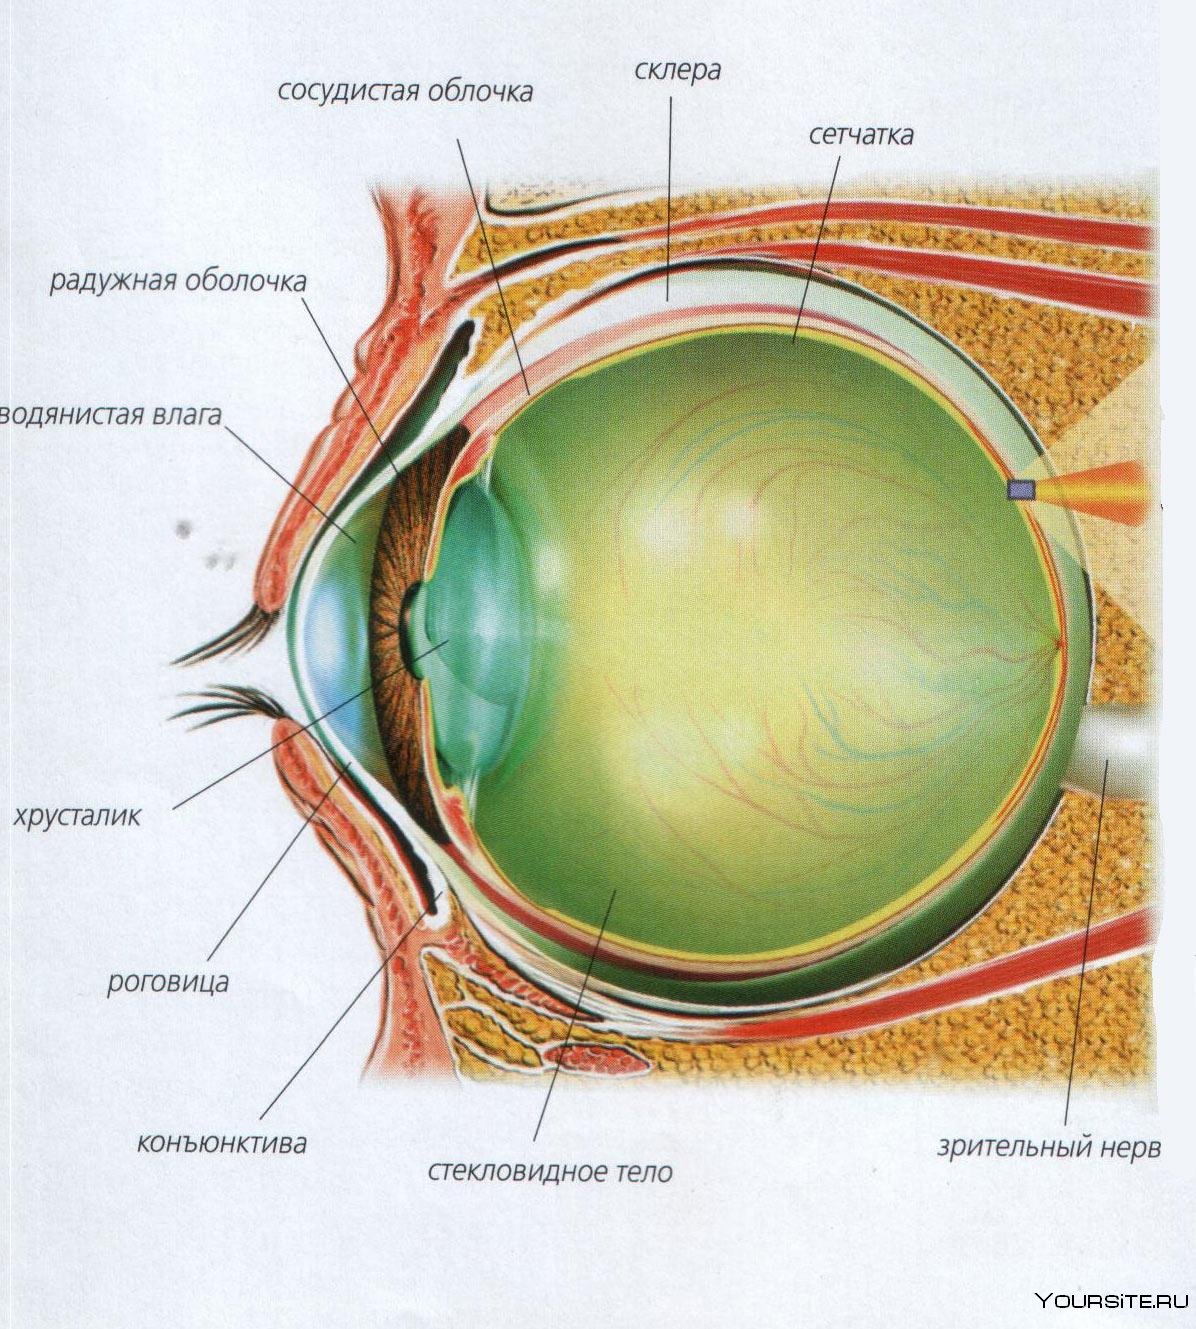 Строение глаза глазное яблоко. Строение глазного яблока анатомия. Анатомия глазного яблока и глазницы. Строение зрительного анализатора глазное яблоко. Анатомия глаз роговица и конъюнктива.